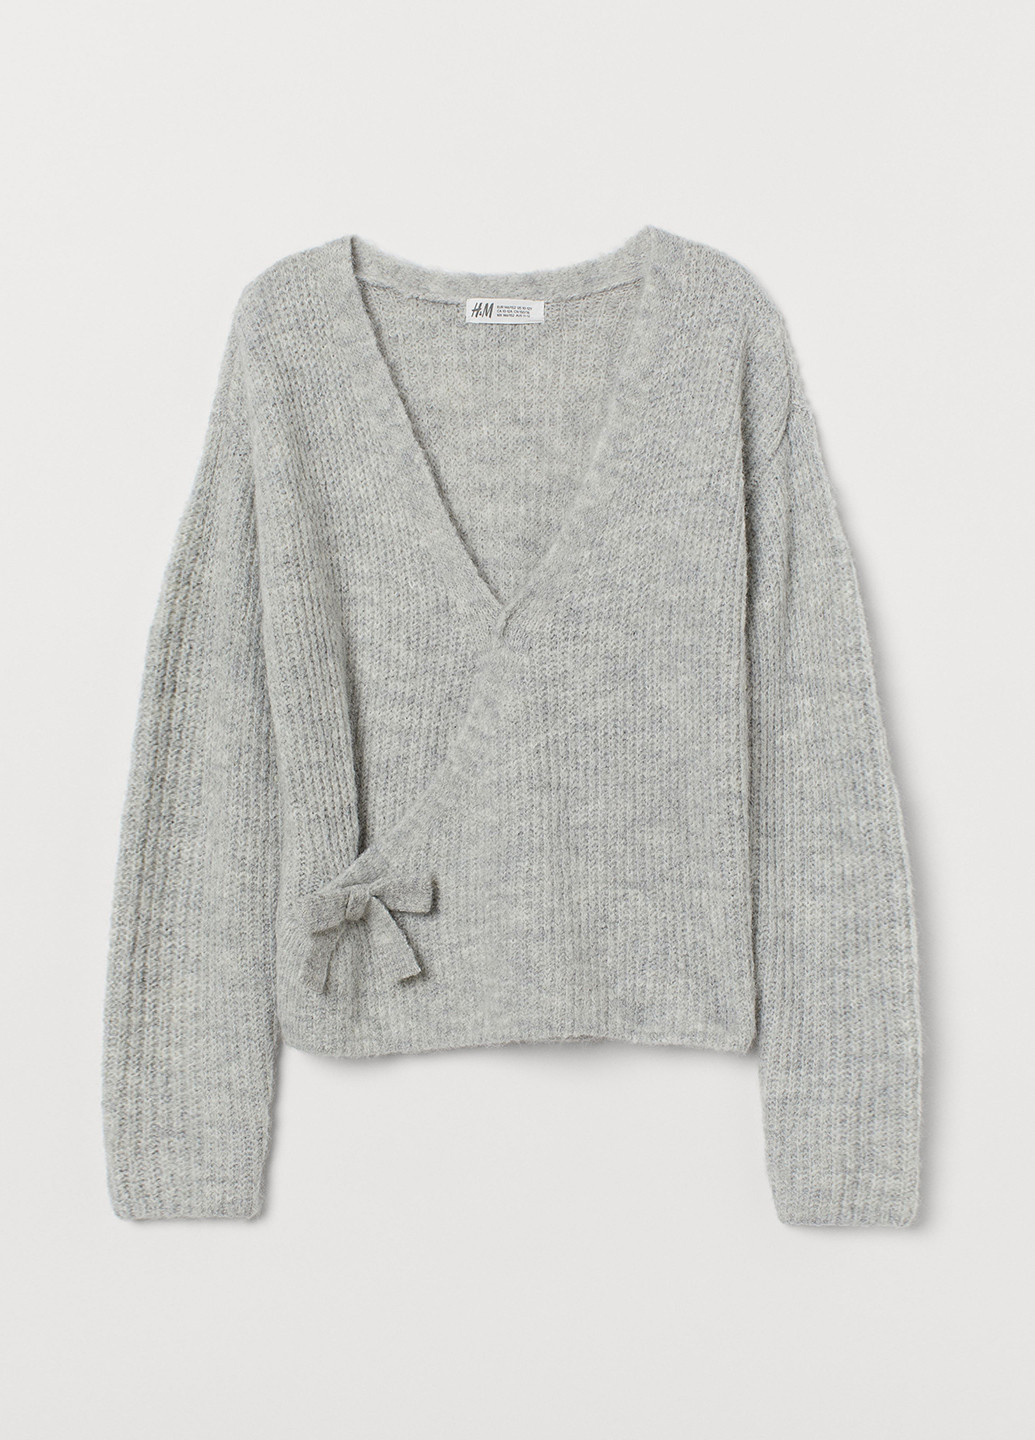 Светло-серый демисезонный пуловер пуловер H&M